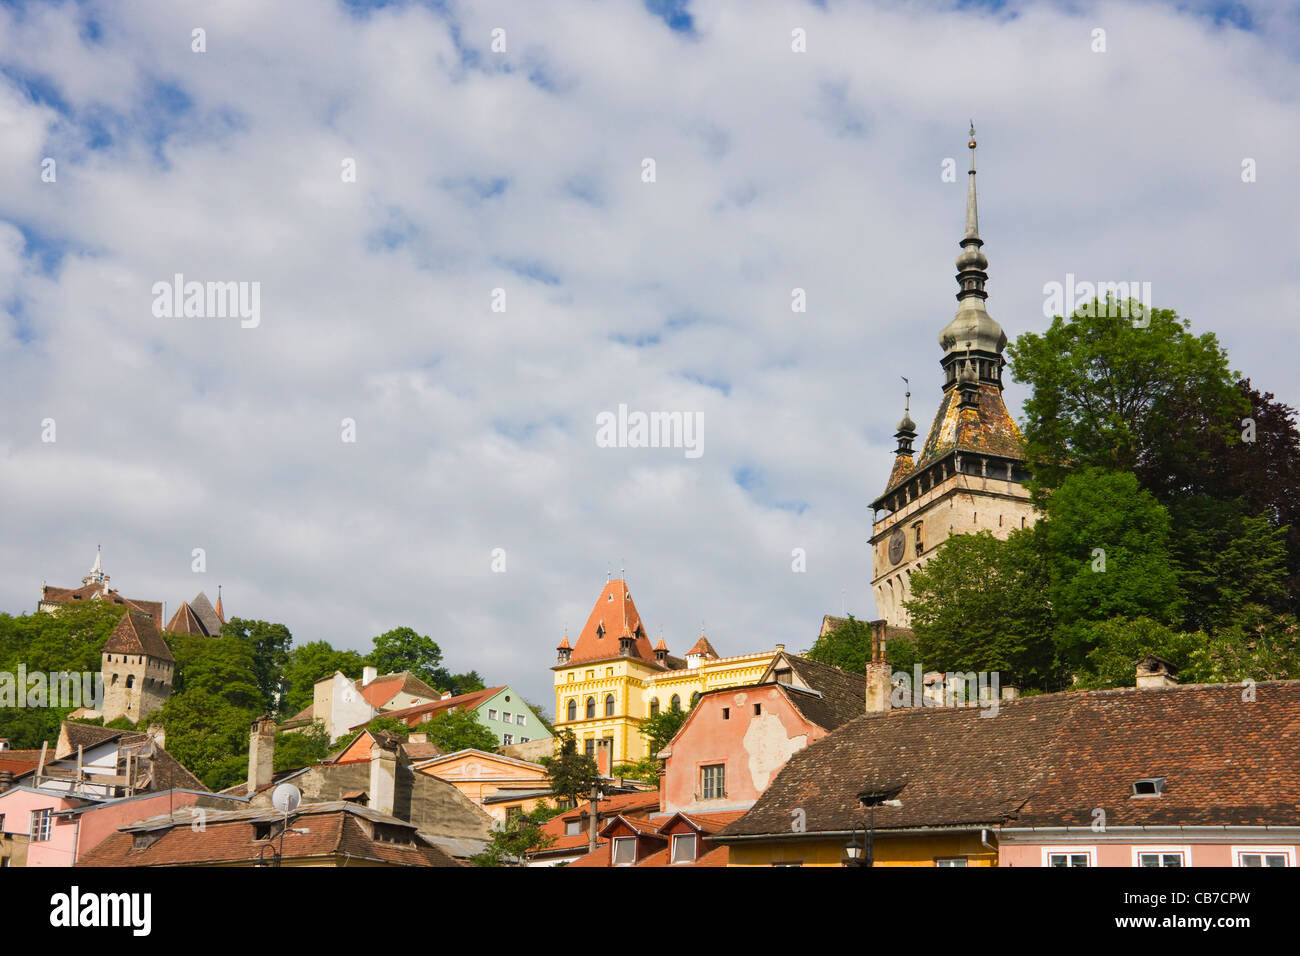 Son Église et la Tour de l'horloge à Sighisoara, UNESCO World Heritage site, Roumanie Banque D'Images